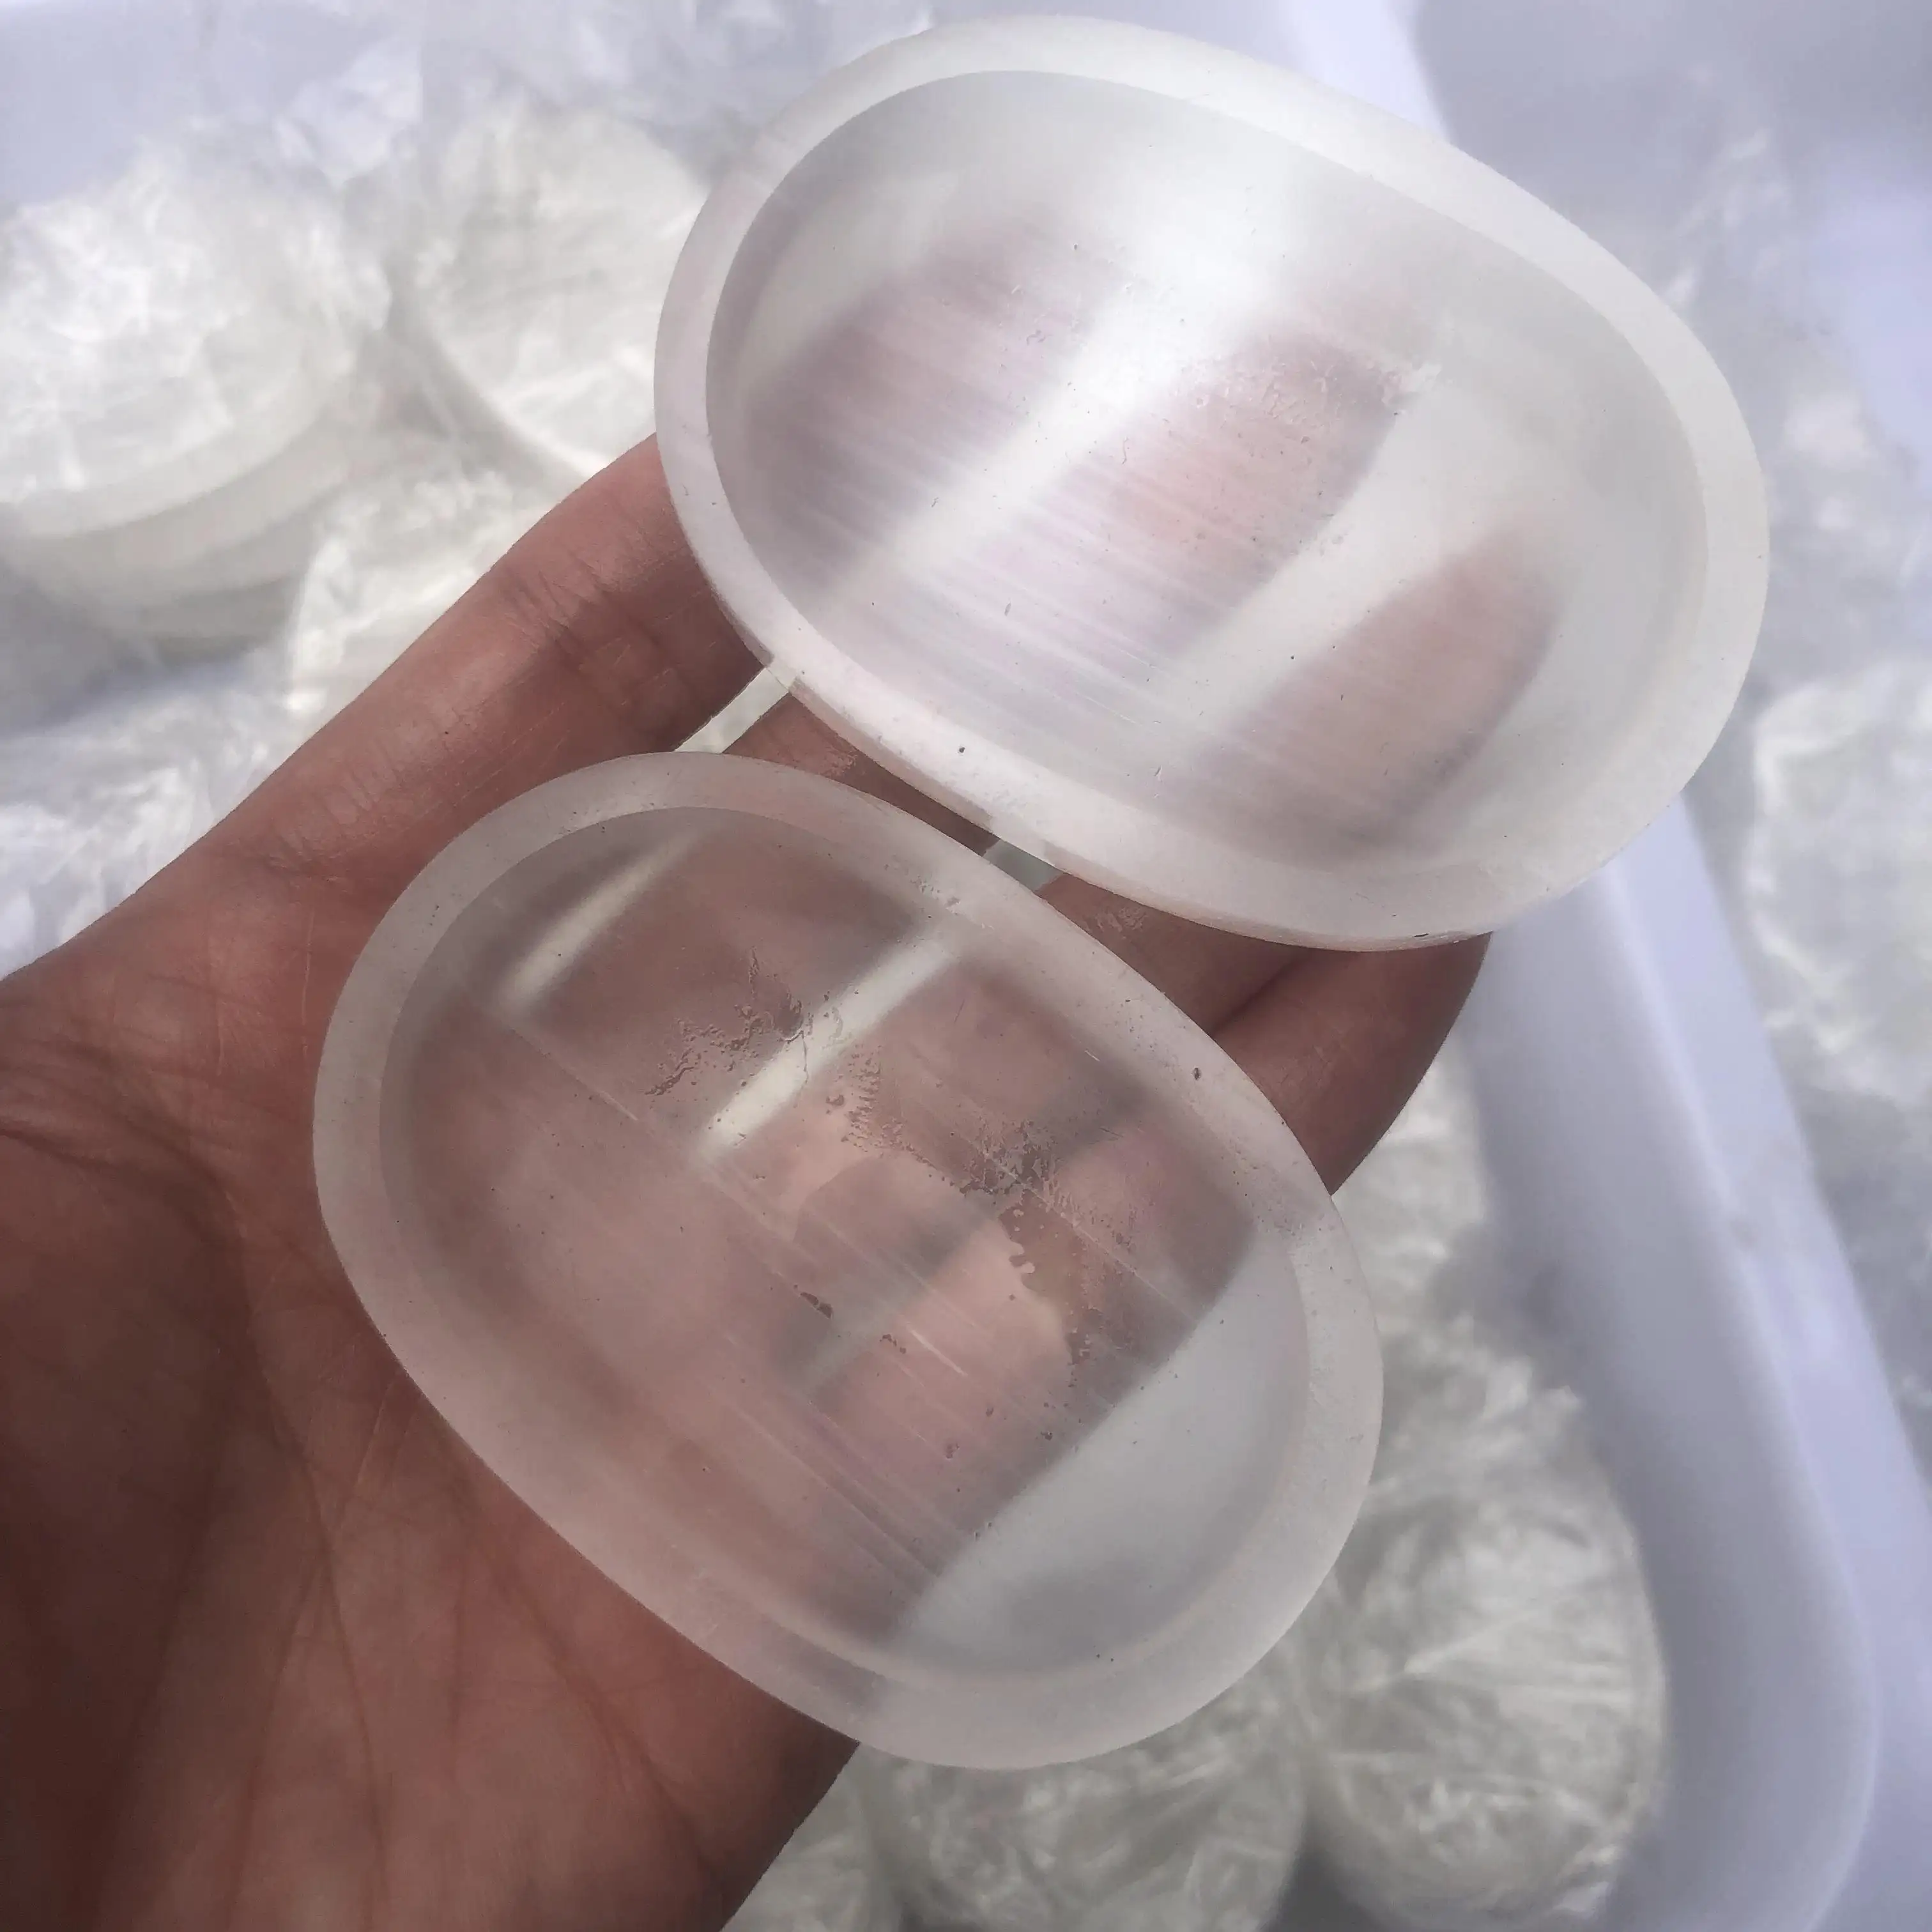 Großhandel natürliche kleine weiße Selenit schale ovale Form spirituelle heilende Kristalls chale für Souvenir geschenke